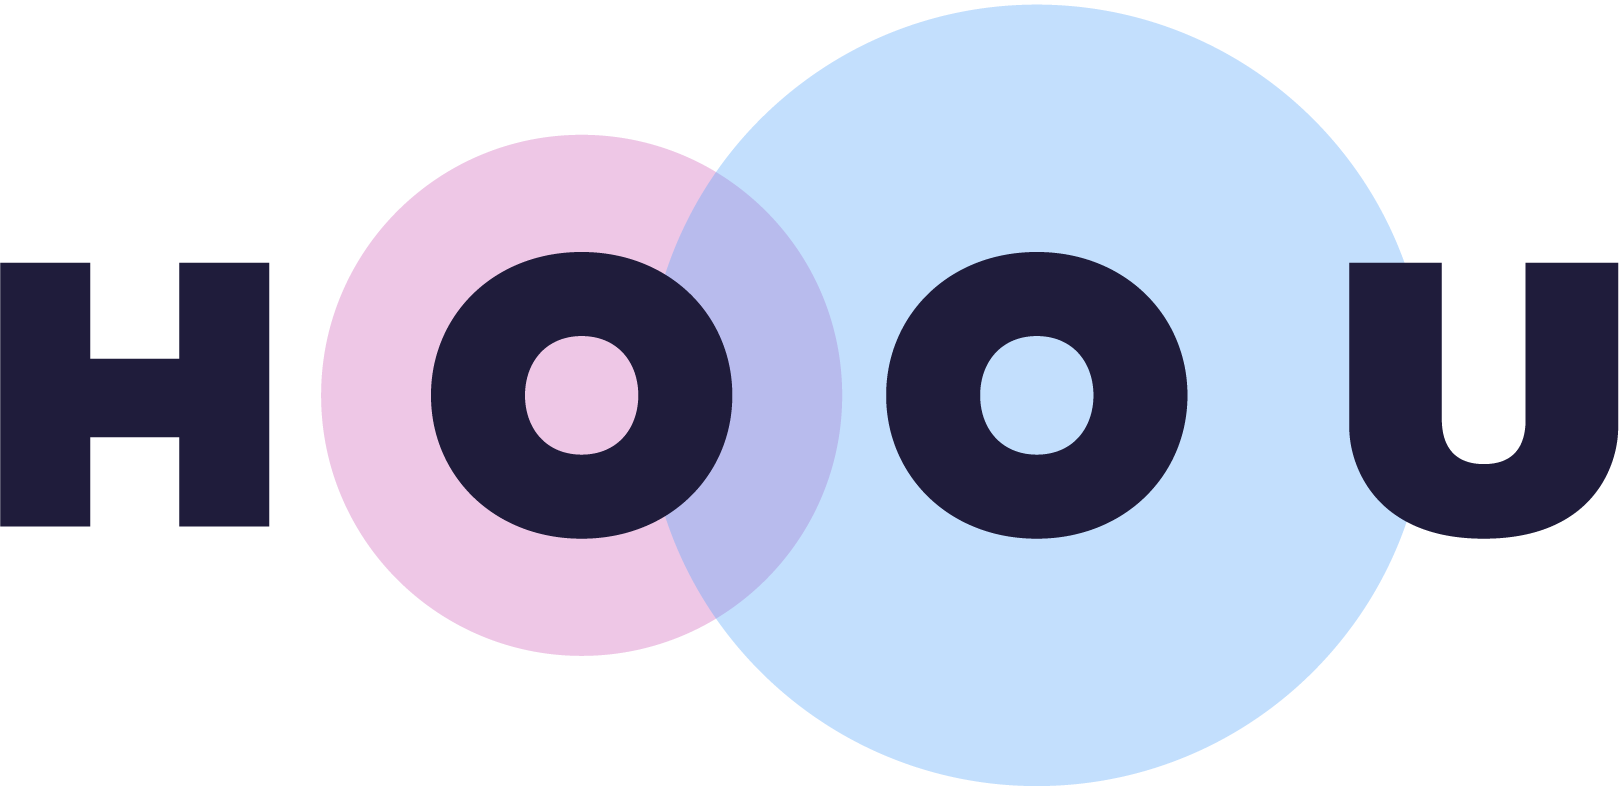 HOOU Logo